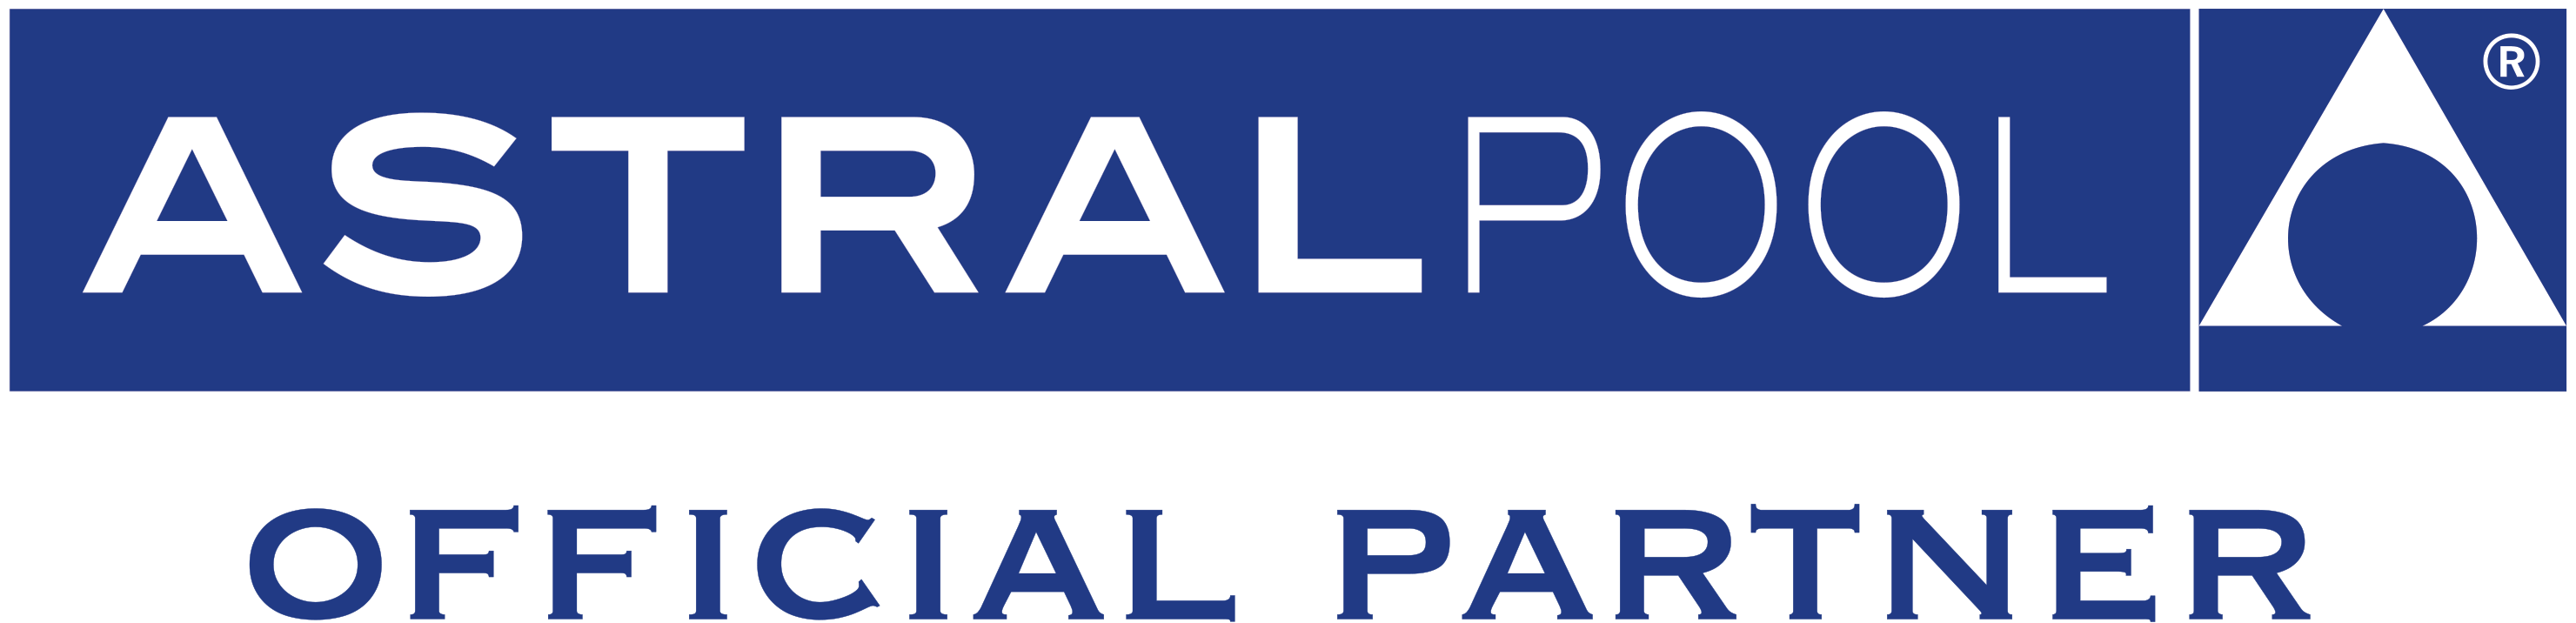 logo astralpool OP